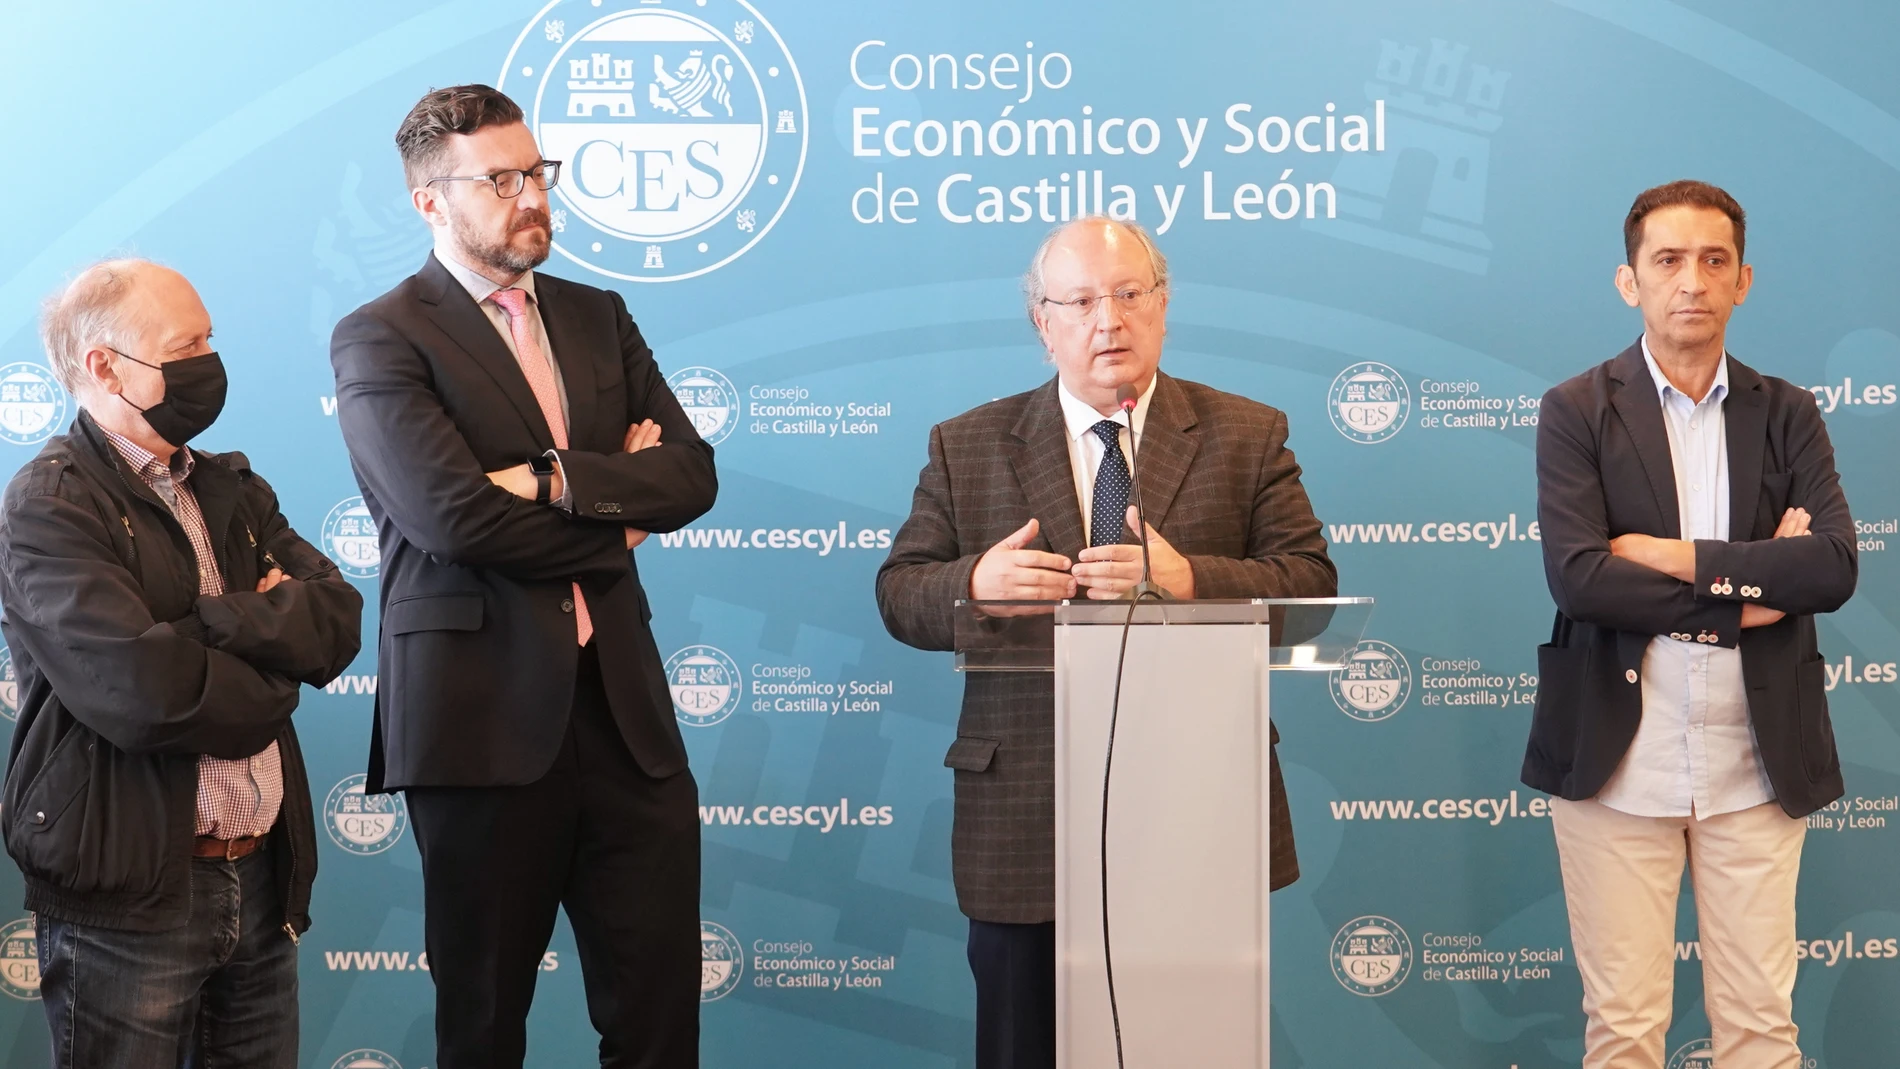 La Mesa de Gobierno del Consejo Económico y Social de Castilla y León (CESCyL) presenta el informe "Situación económica y social de Castilla y León en 2021". En la imagen, su presidente Enrique Cabero